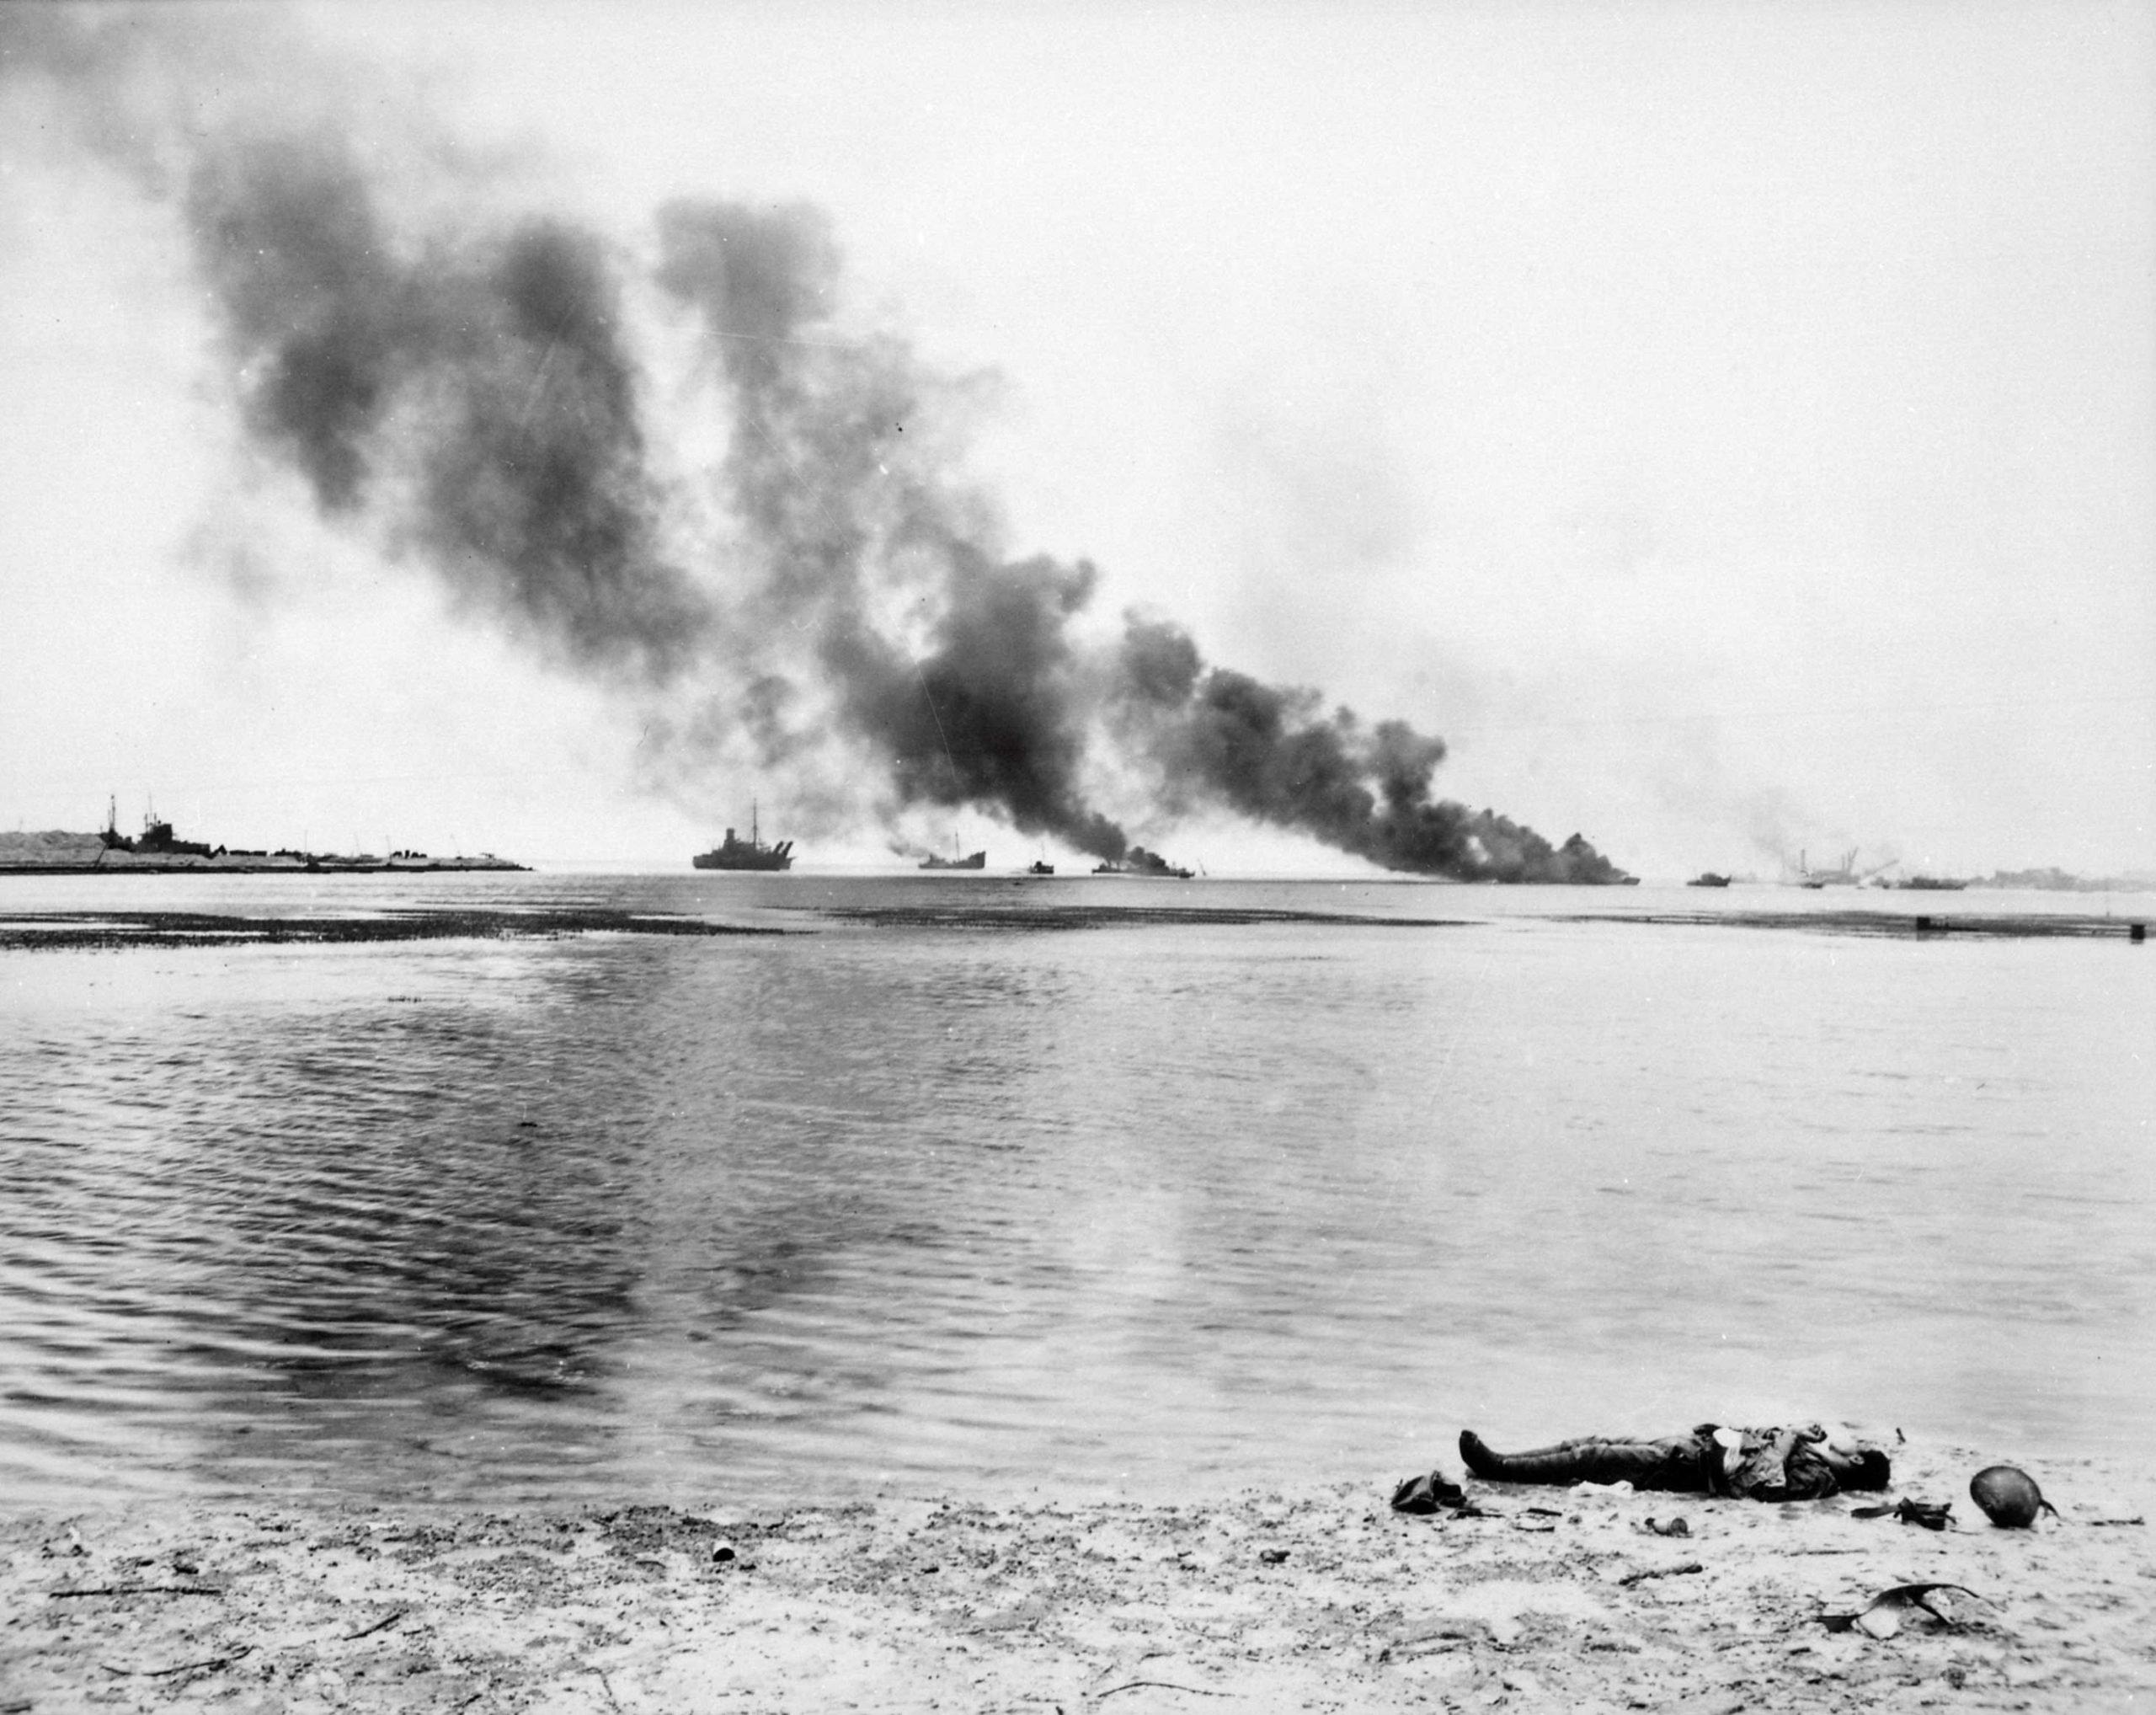 Burning Japanese ships